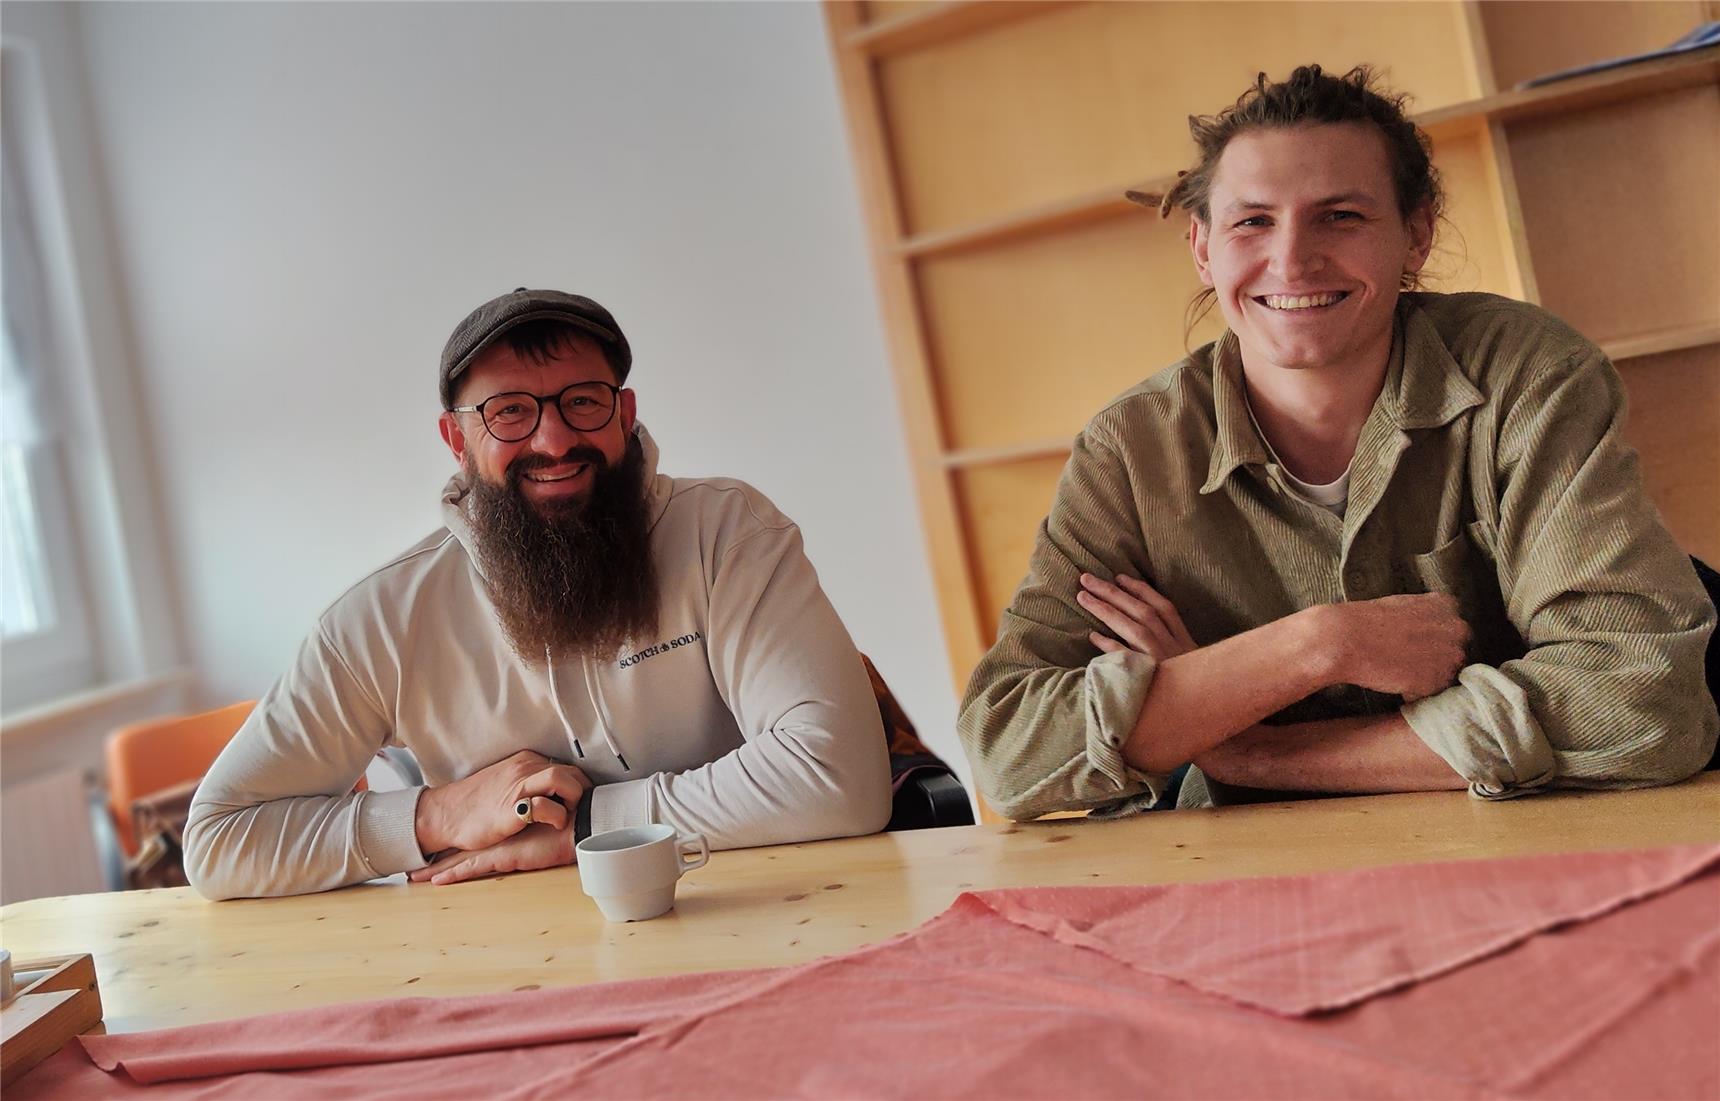 Wolfgang Gaßler (Fachgebietsleiter, links) und Jonas Nirschl (Erlebnispädagoge und Outdoor-Trainer) .  (c) Grimsmann | Caritas FRG.